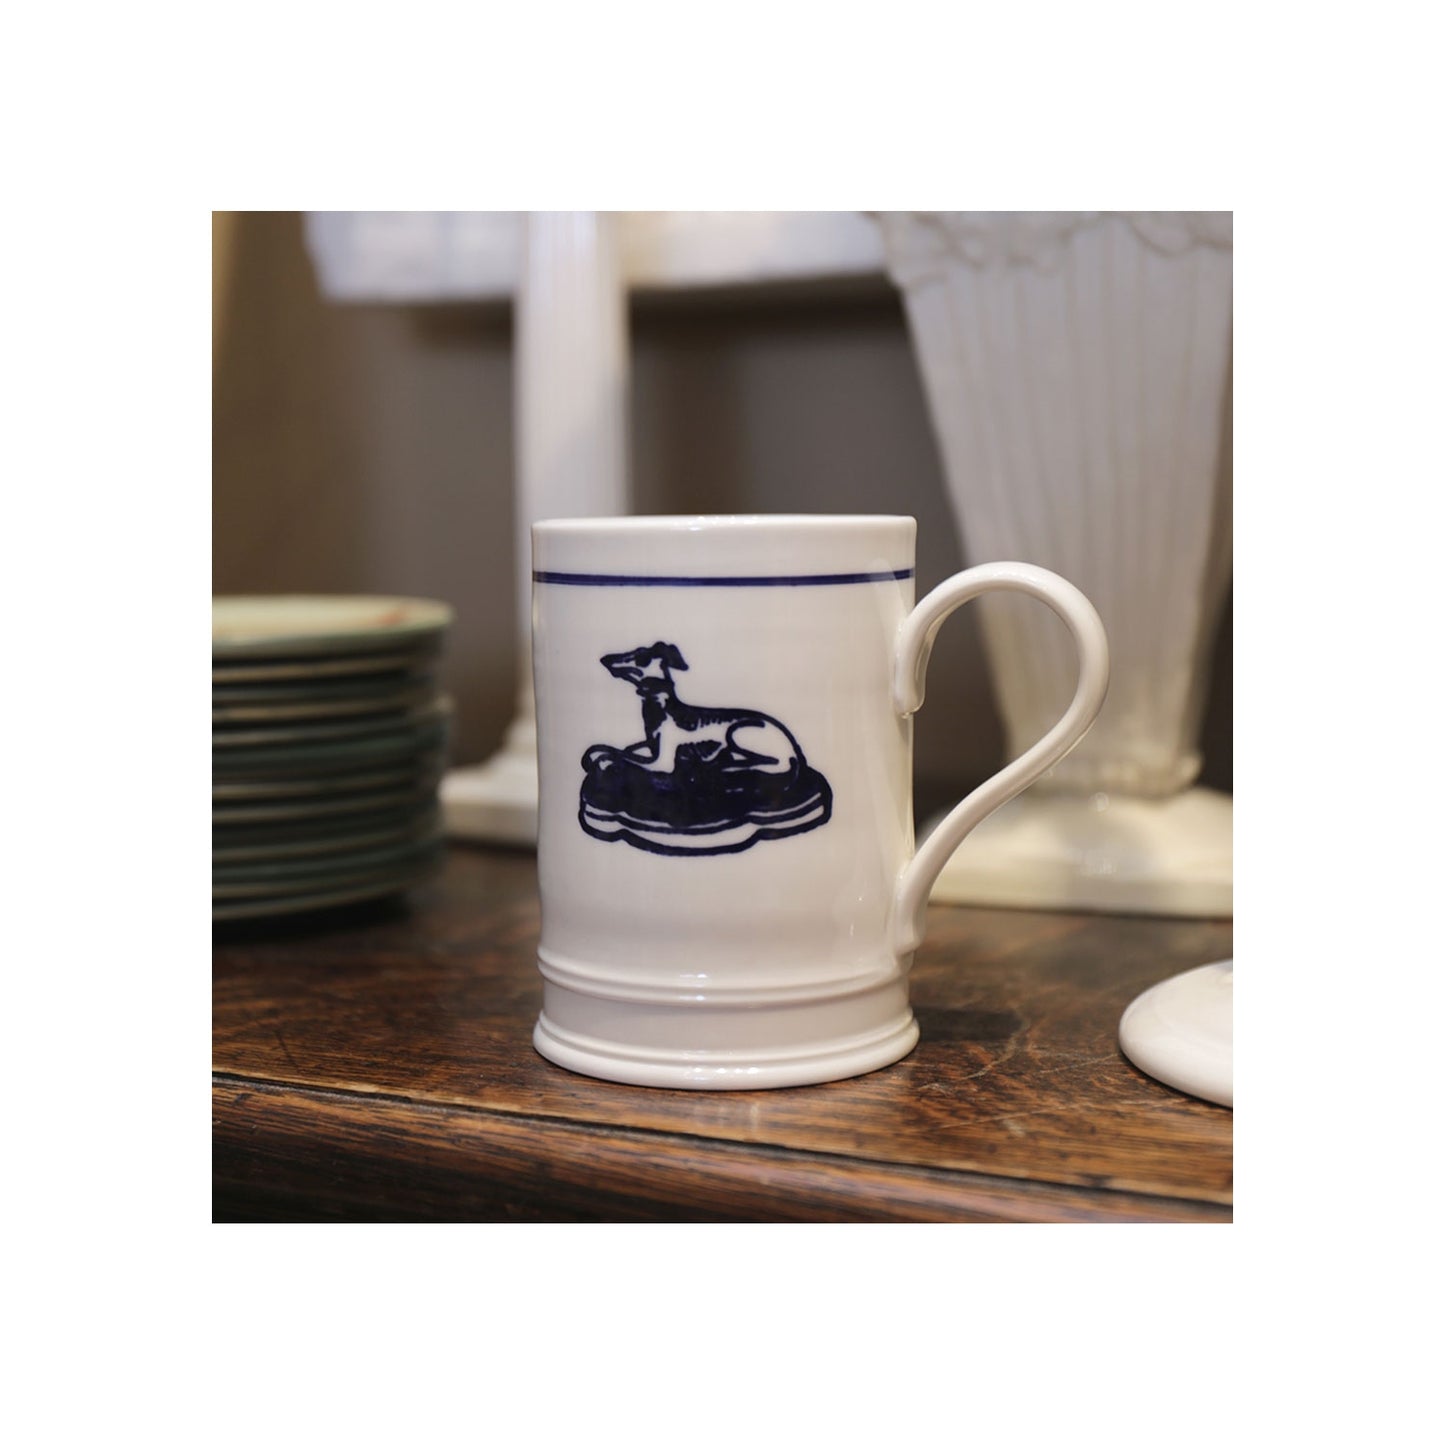 Classical Mug - Hound With Blue Line